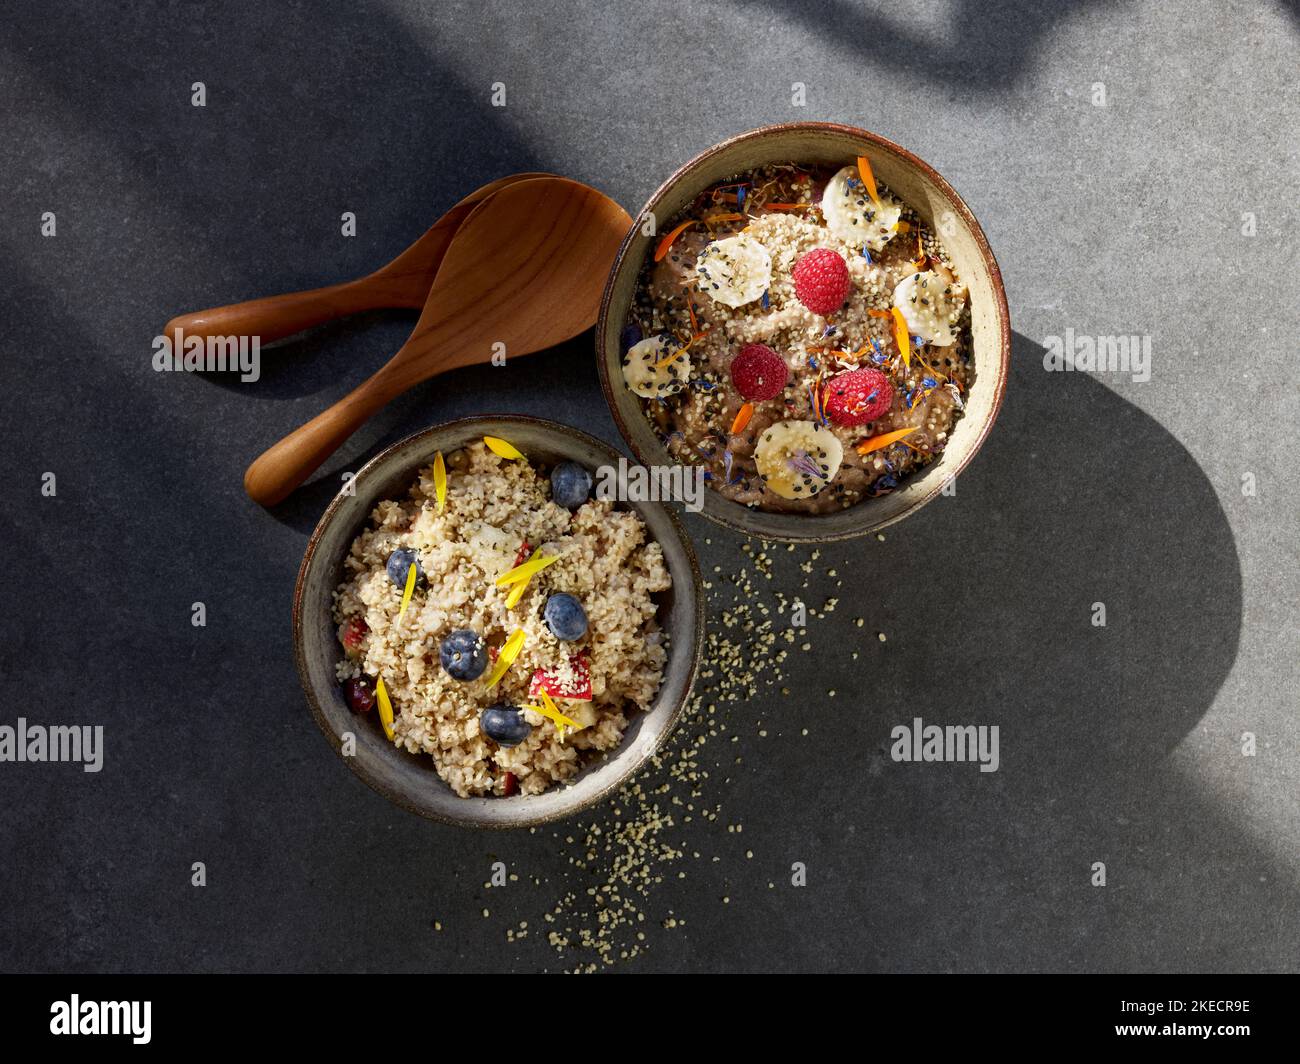 ayurvedische Küche, zwei Tonschüsseln mit Grießbrei und Früchten auf einem dunklen Steinteller Stockfoto